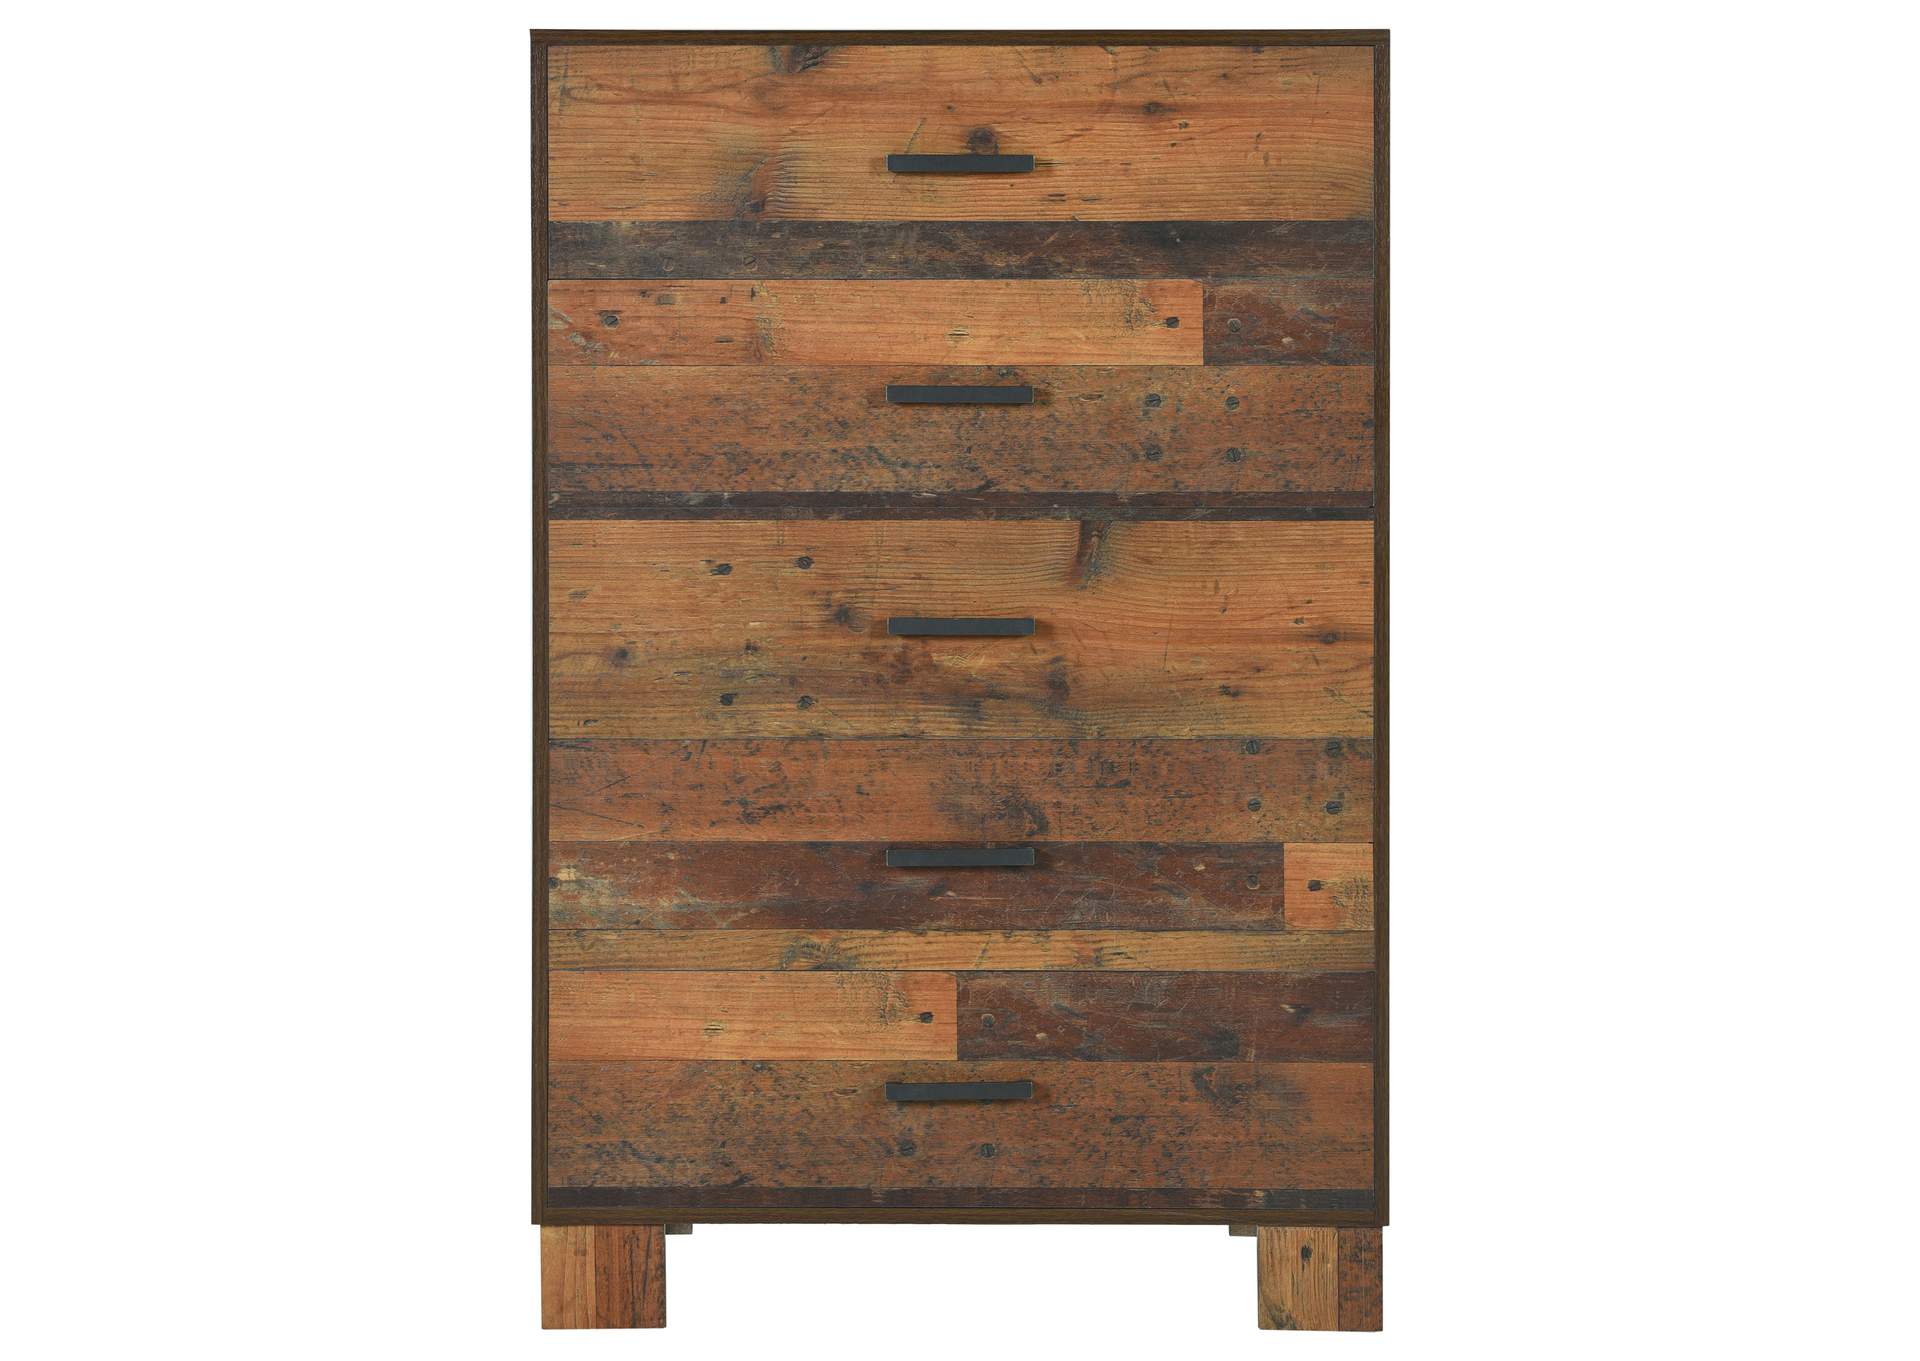 Sidney 5-piece Queen Panel Bedroom Set Rustic Pine,Coaster Furniture